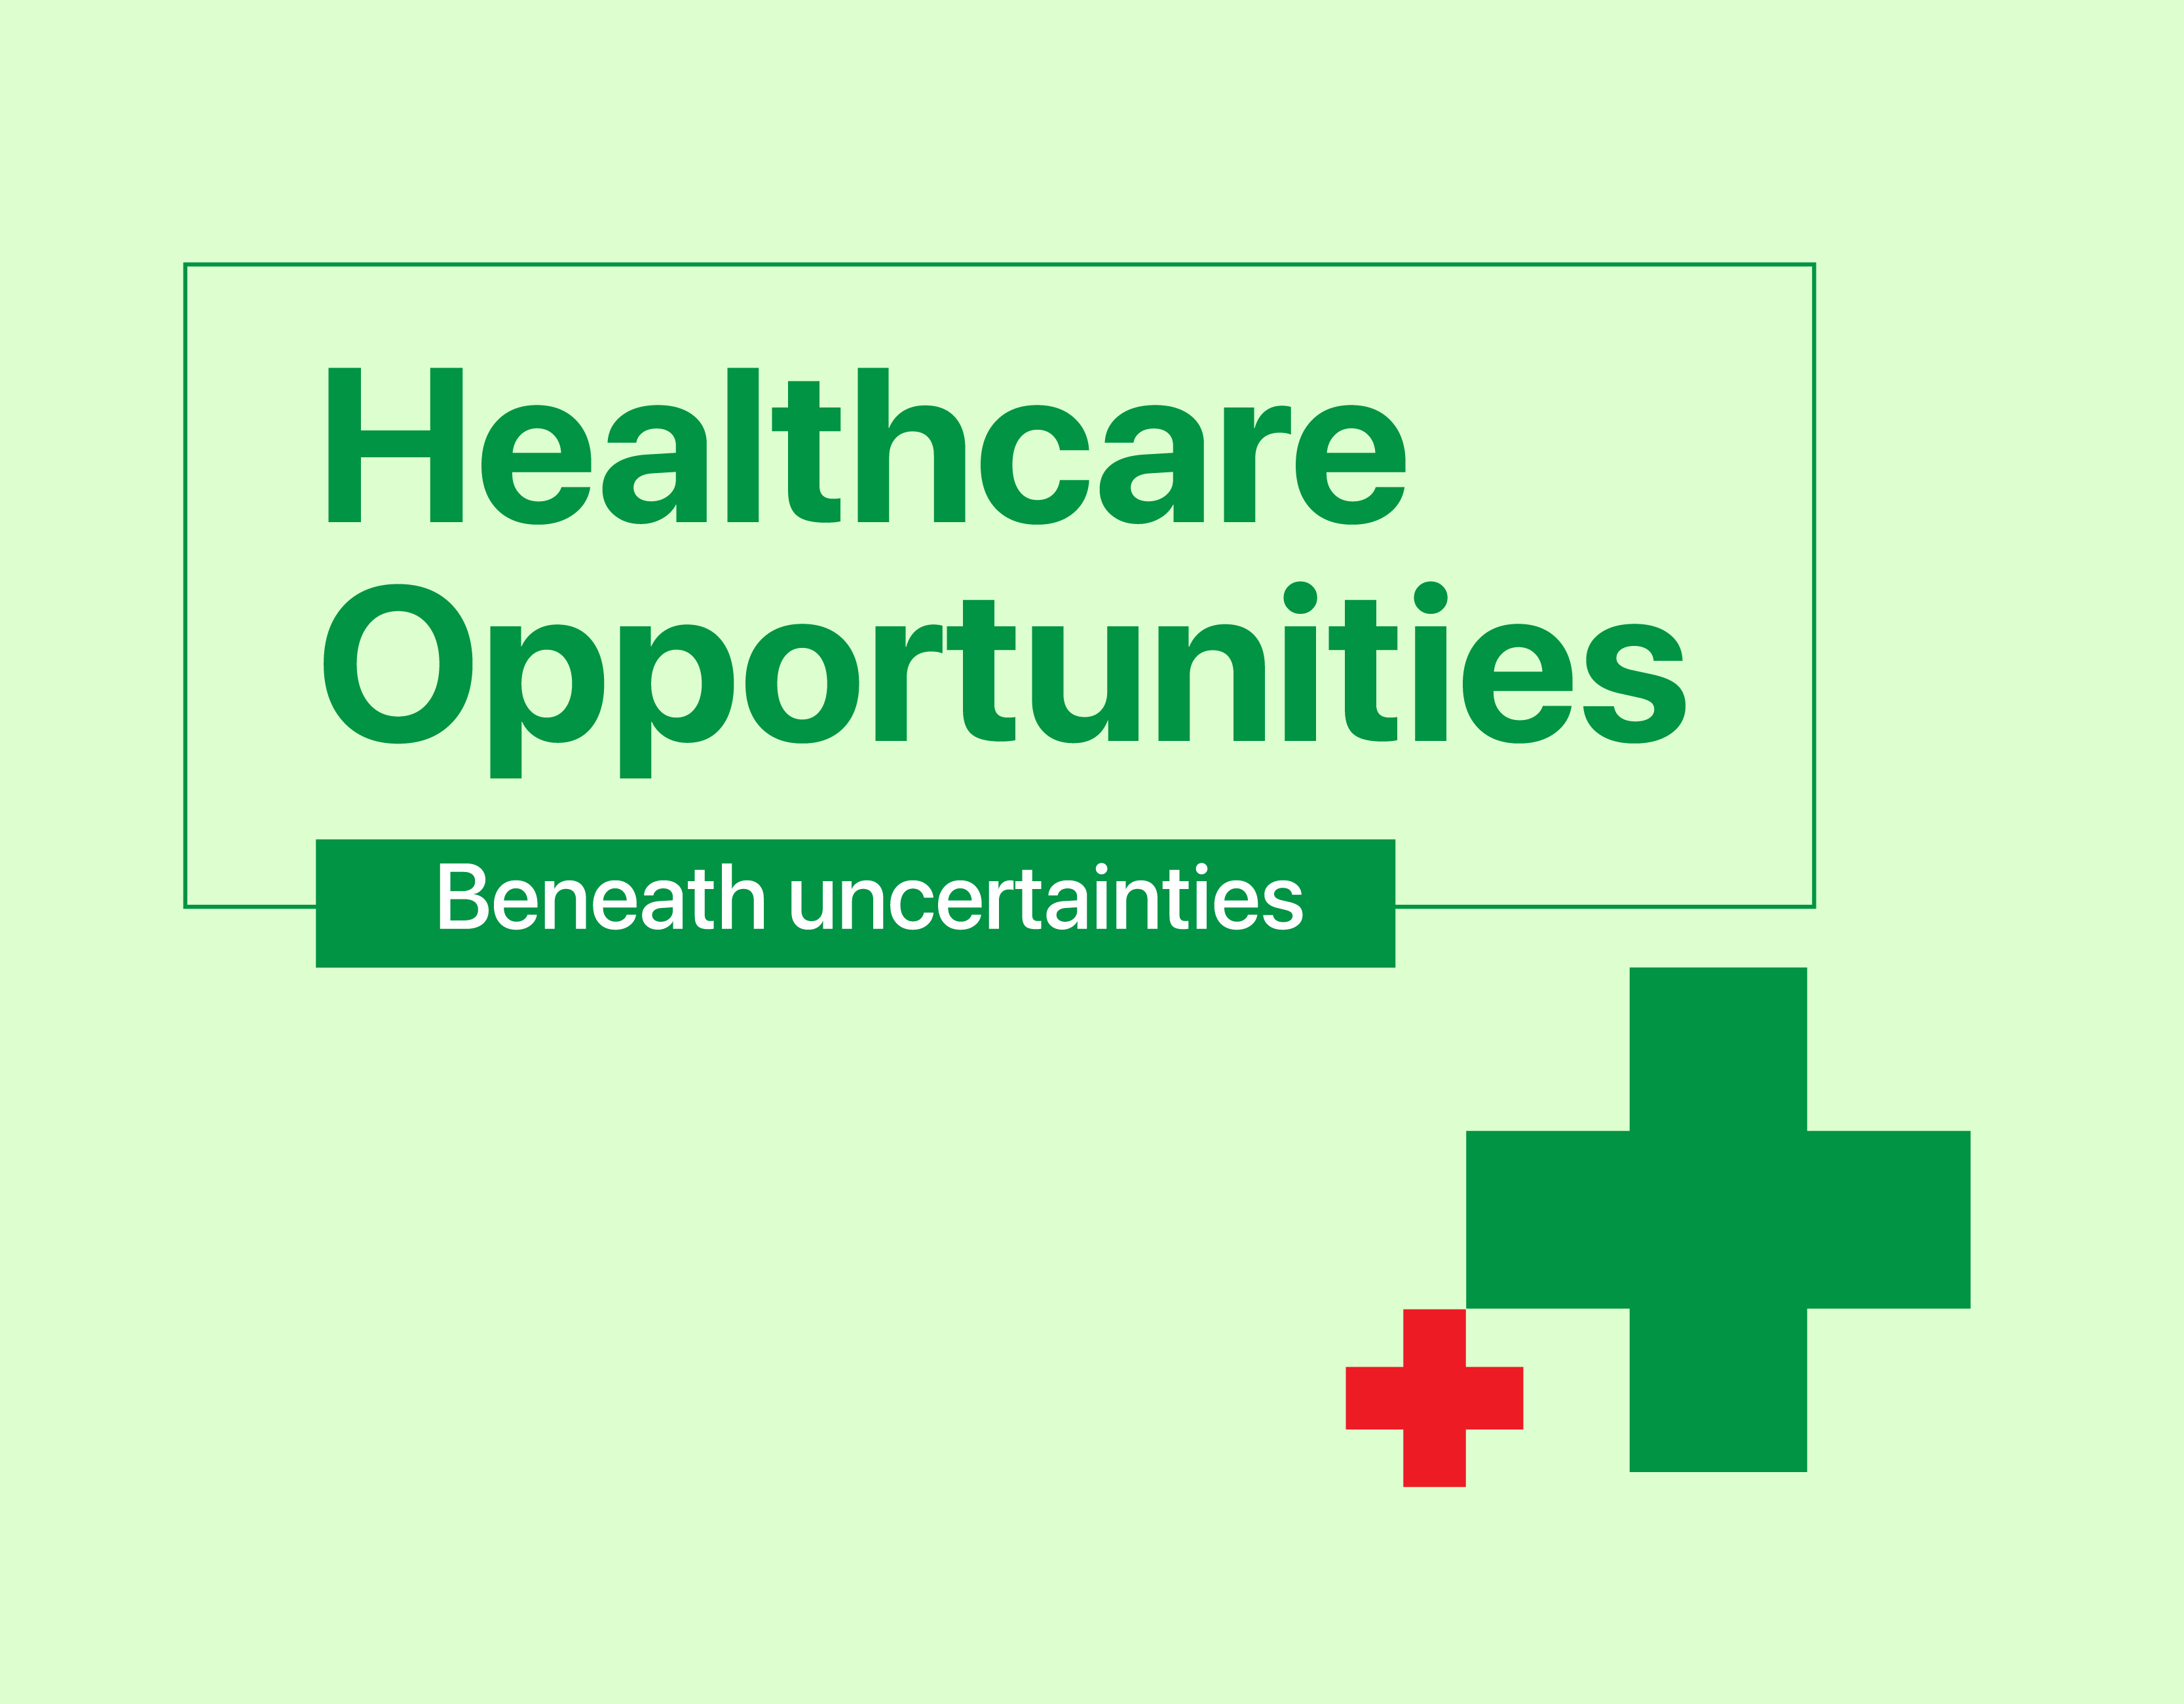 Healthcare opportunities